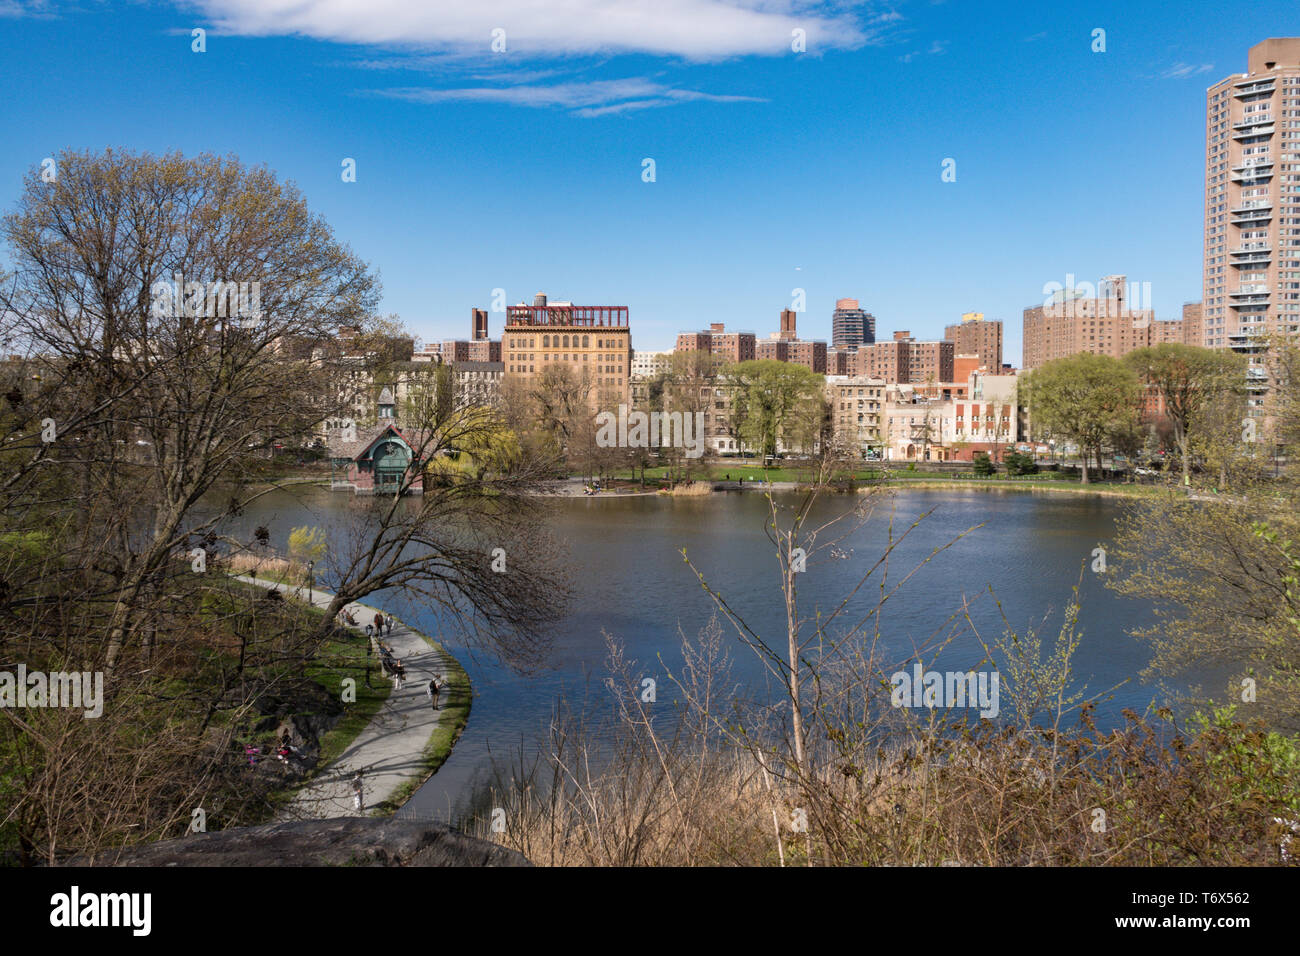 Le Harlem Meer est un petit plan d'eau situé à l'extrême nord de Central Park, à New York, aux États-Unis Banque D'Images